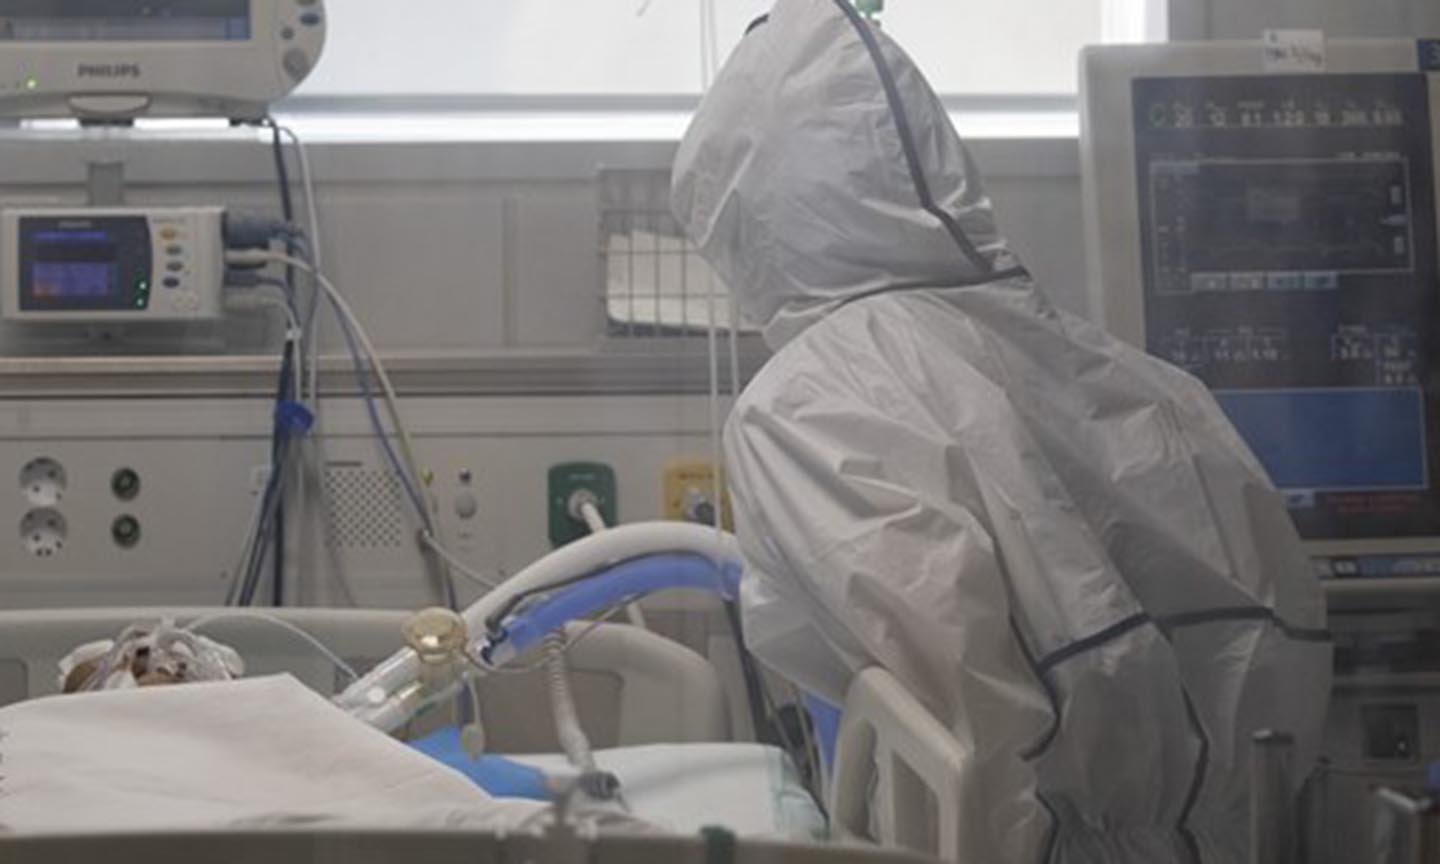 Nhân viên y tế chăm sóc bệnh nhân mắc COVID-19 tại một bệnh viện ở thành phố Daegu, Hàn Quốc ngày 18/3/2020. (Ảnh: Yonhap/TTXVN)